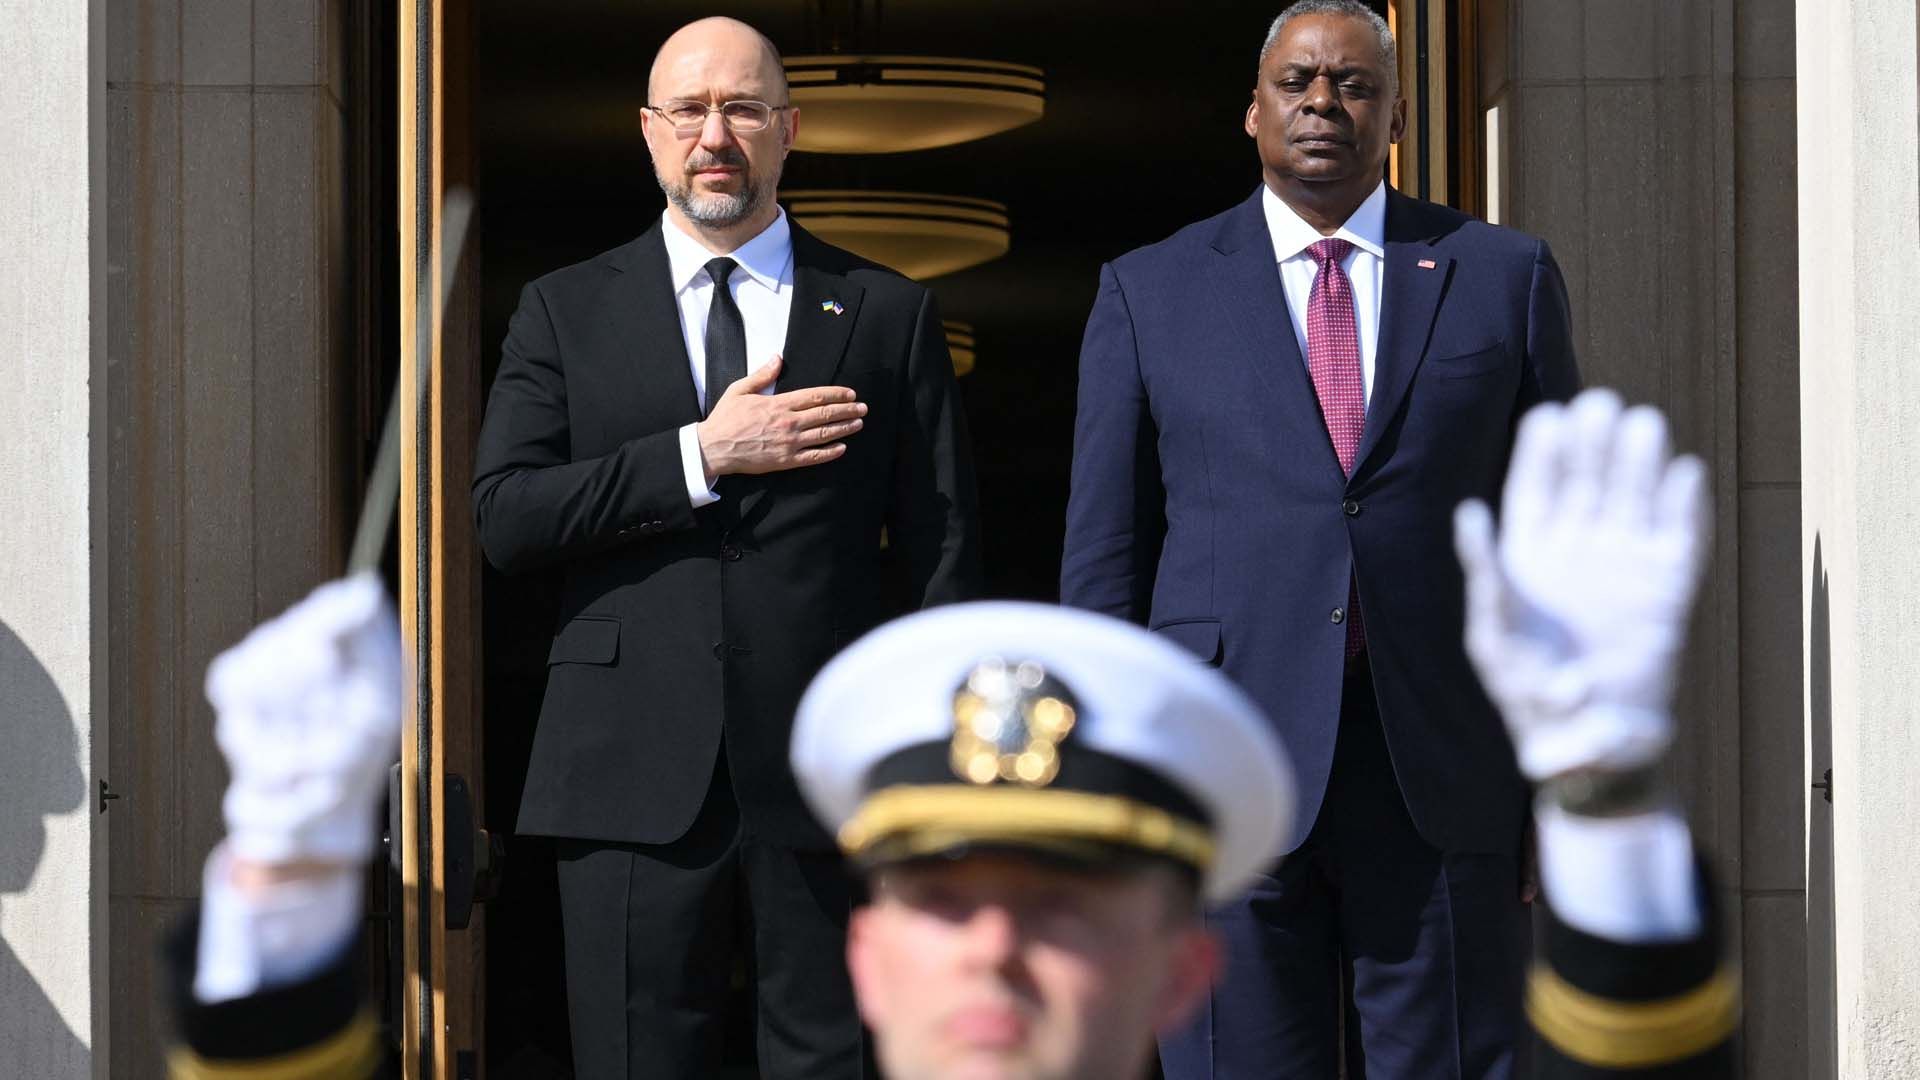 El secretario de Defensa de EEUU, Lloyd Austin, y el primer ministro ucranianos, Denys Shmyhal, durante una ceremonia de bienvenida en el Pentágono, este miércoles.